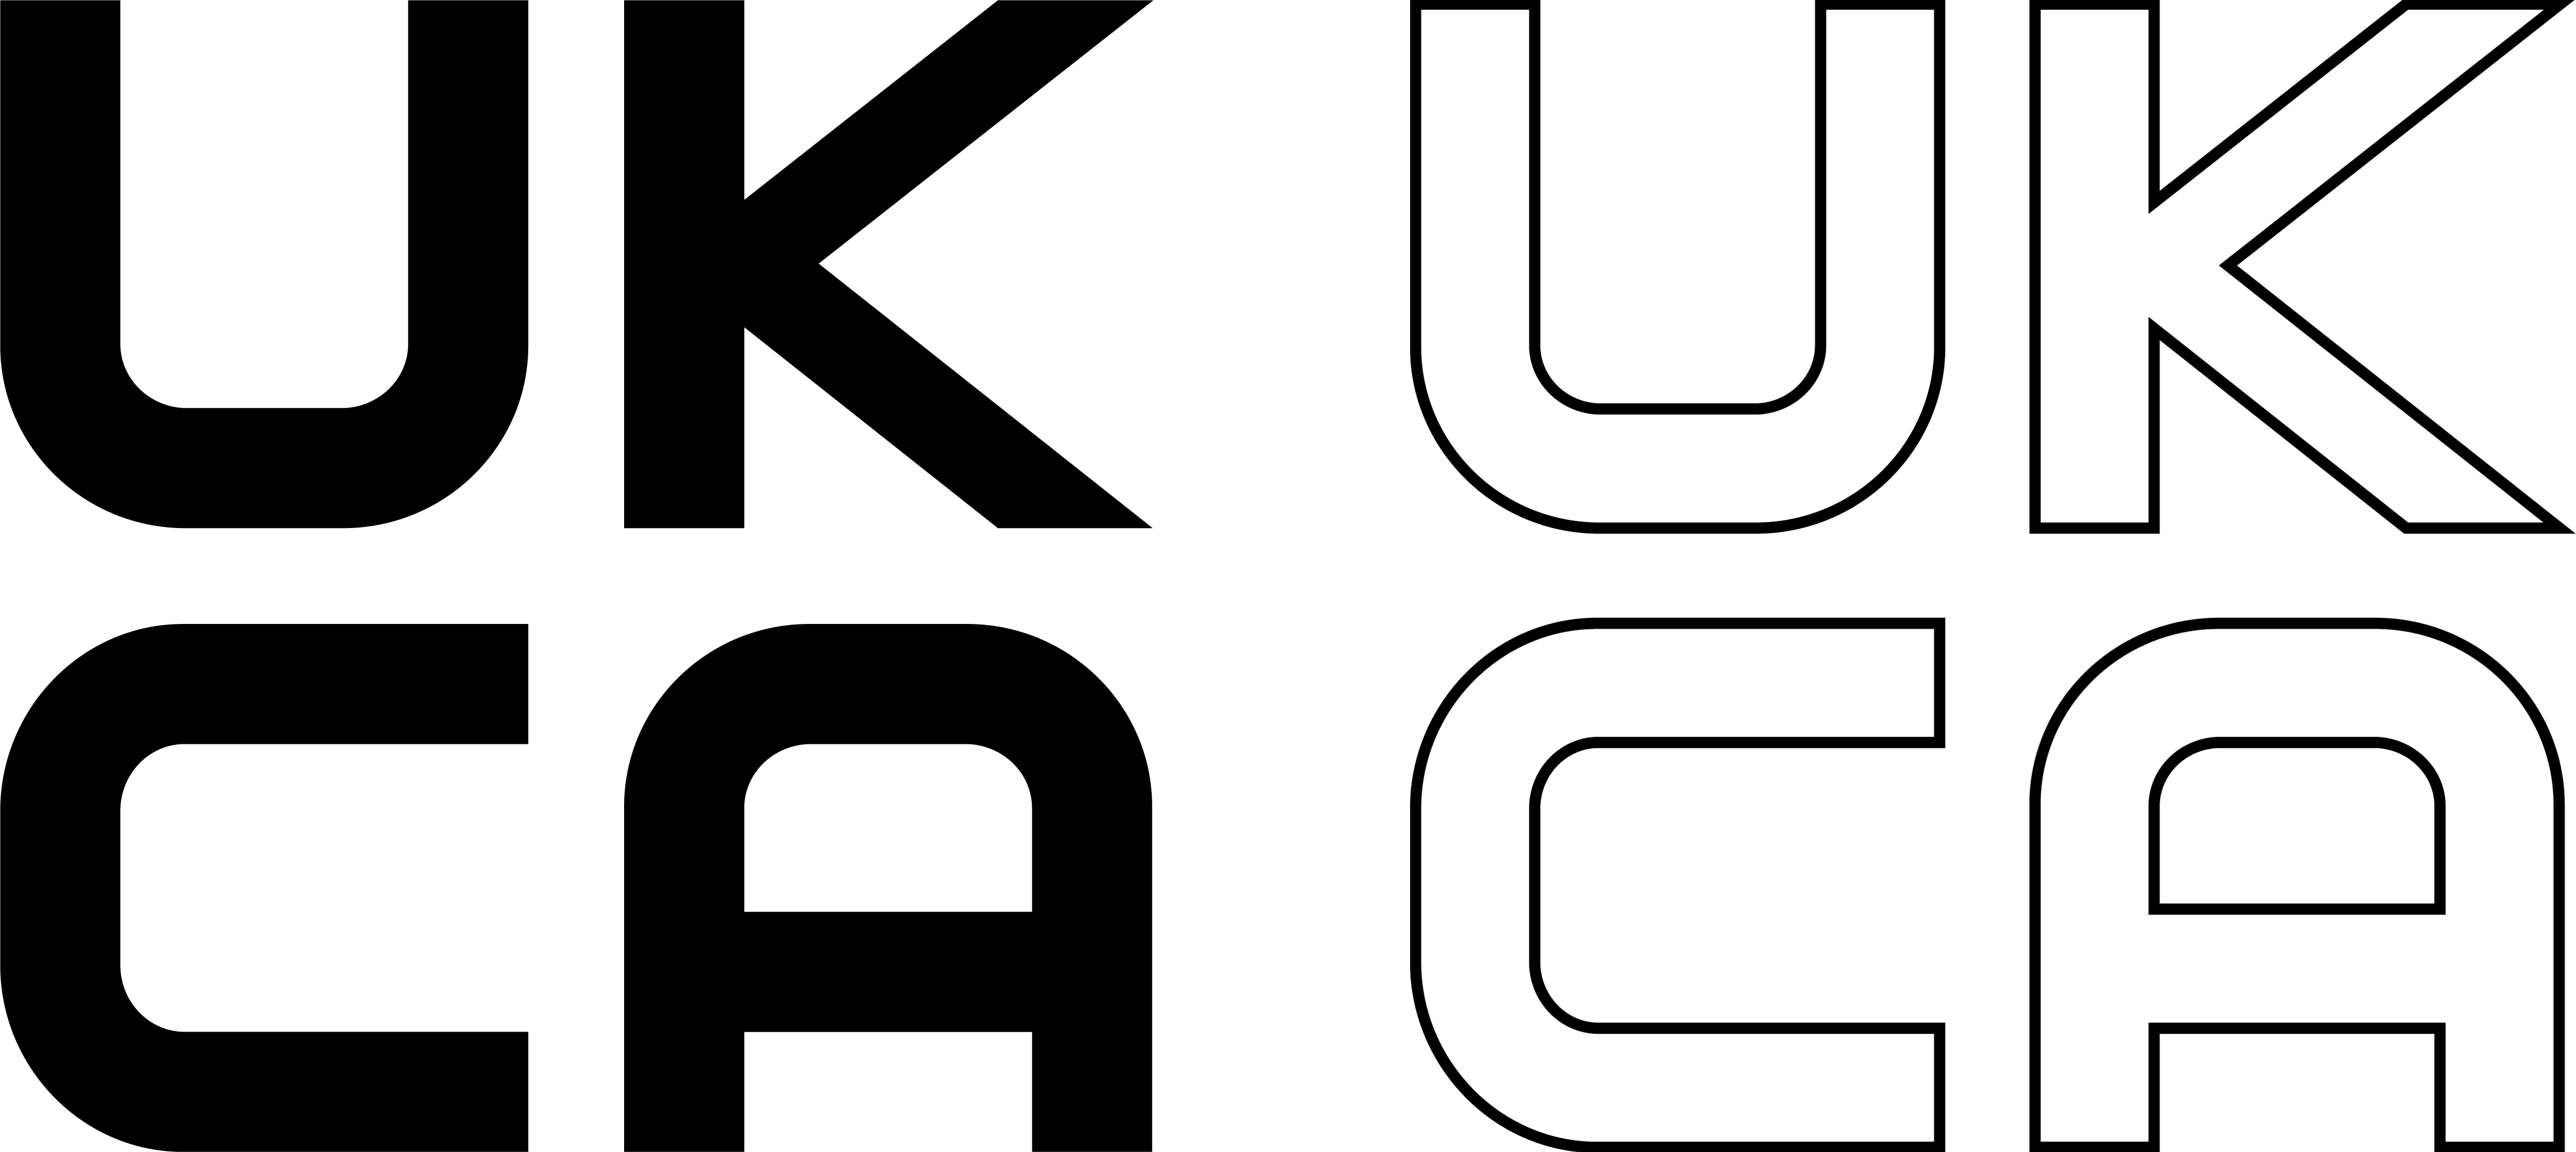 UKCA logo black or outline